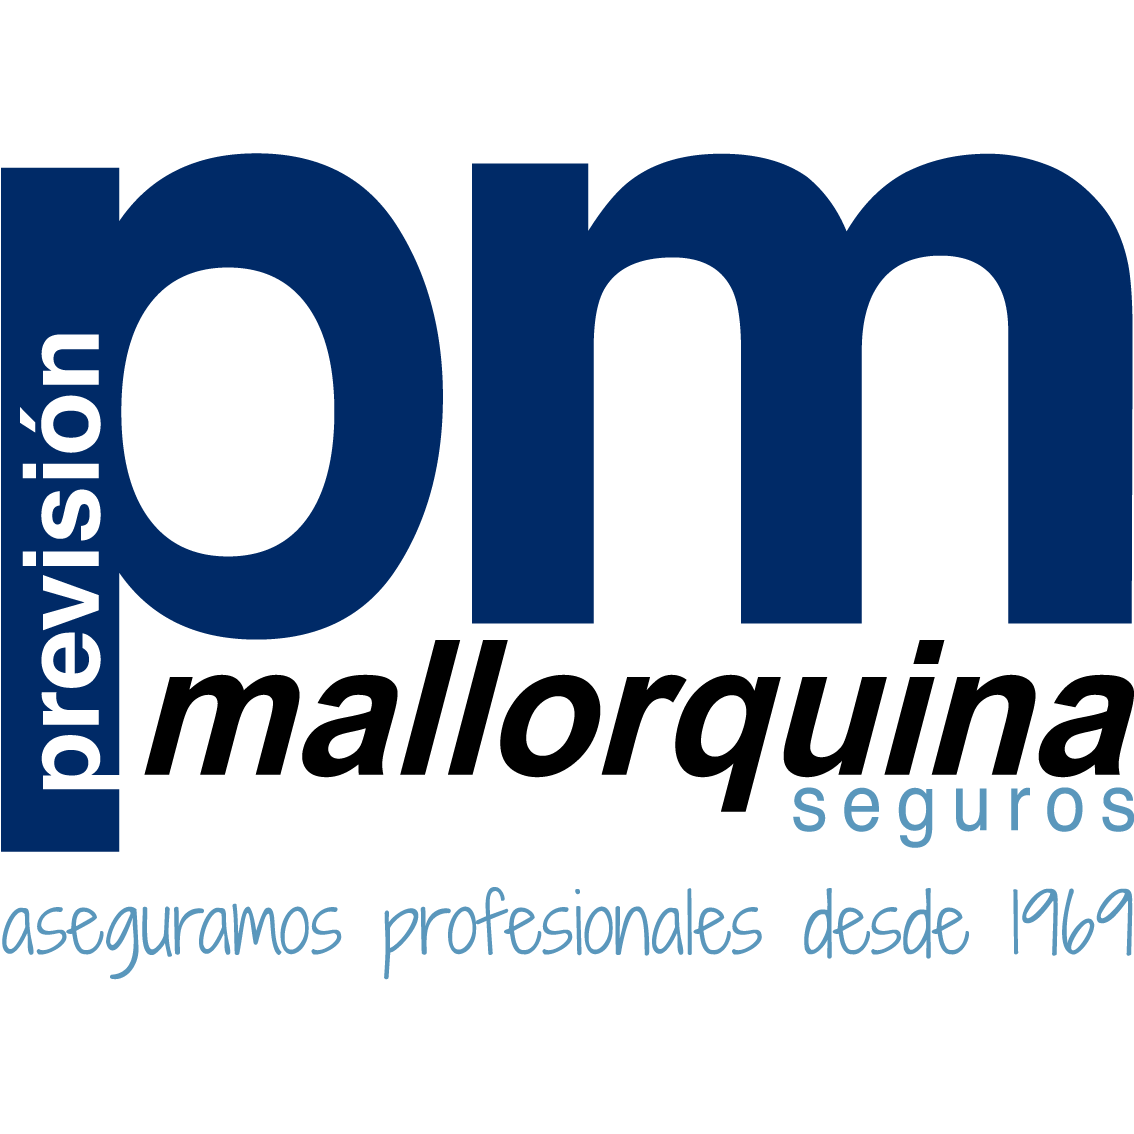 La Previsión Mallorquina de Seguros, S.A. Valencia